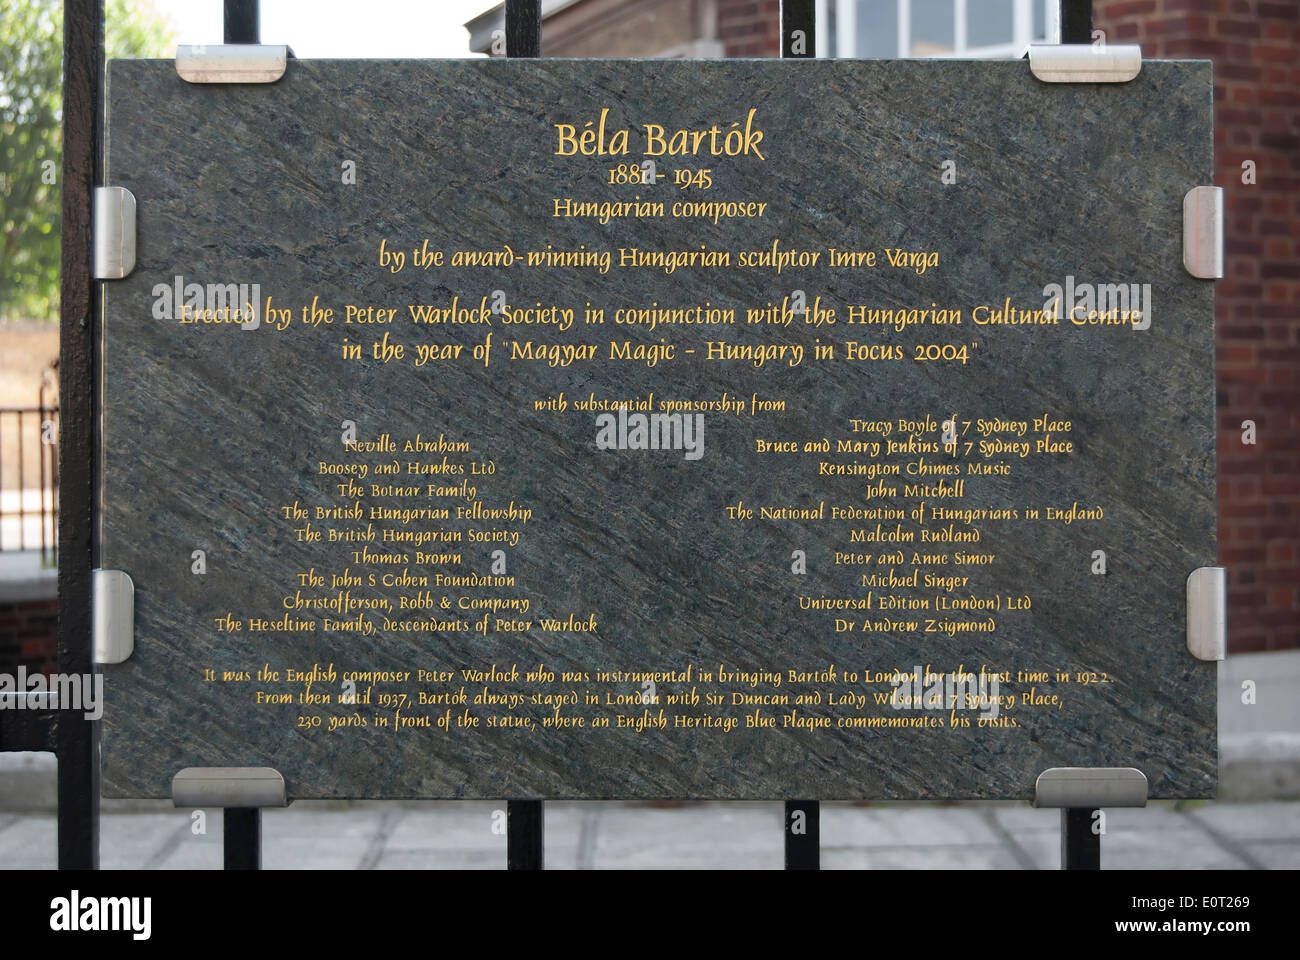 Iscrizione di marcatura di placca Imre Varga della statua del compositore ungherese Bela Bartok, South Kensington, Londra, Inghilterra Foto Stock